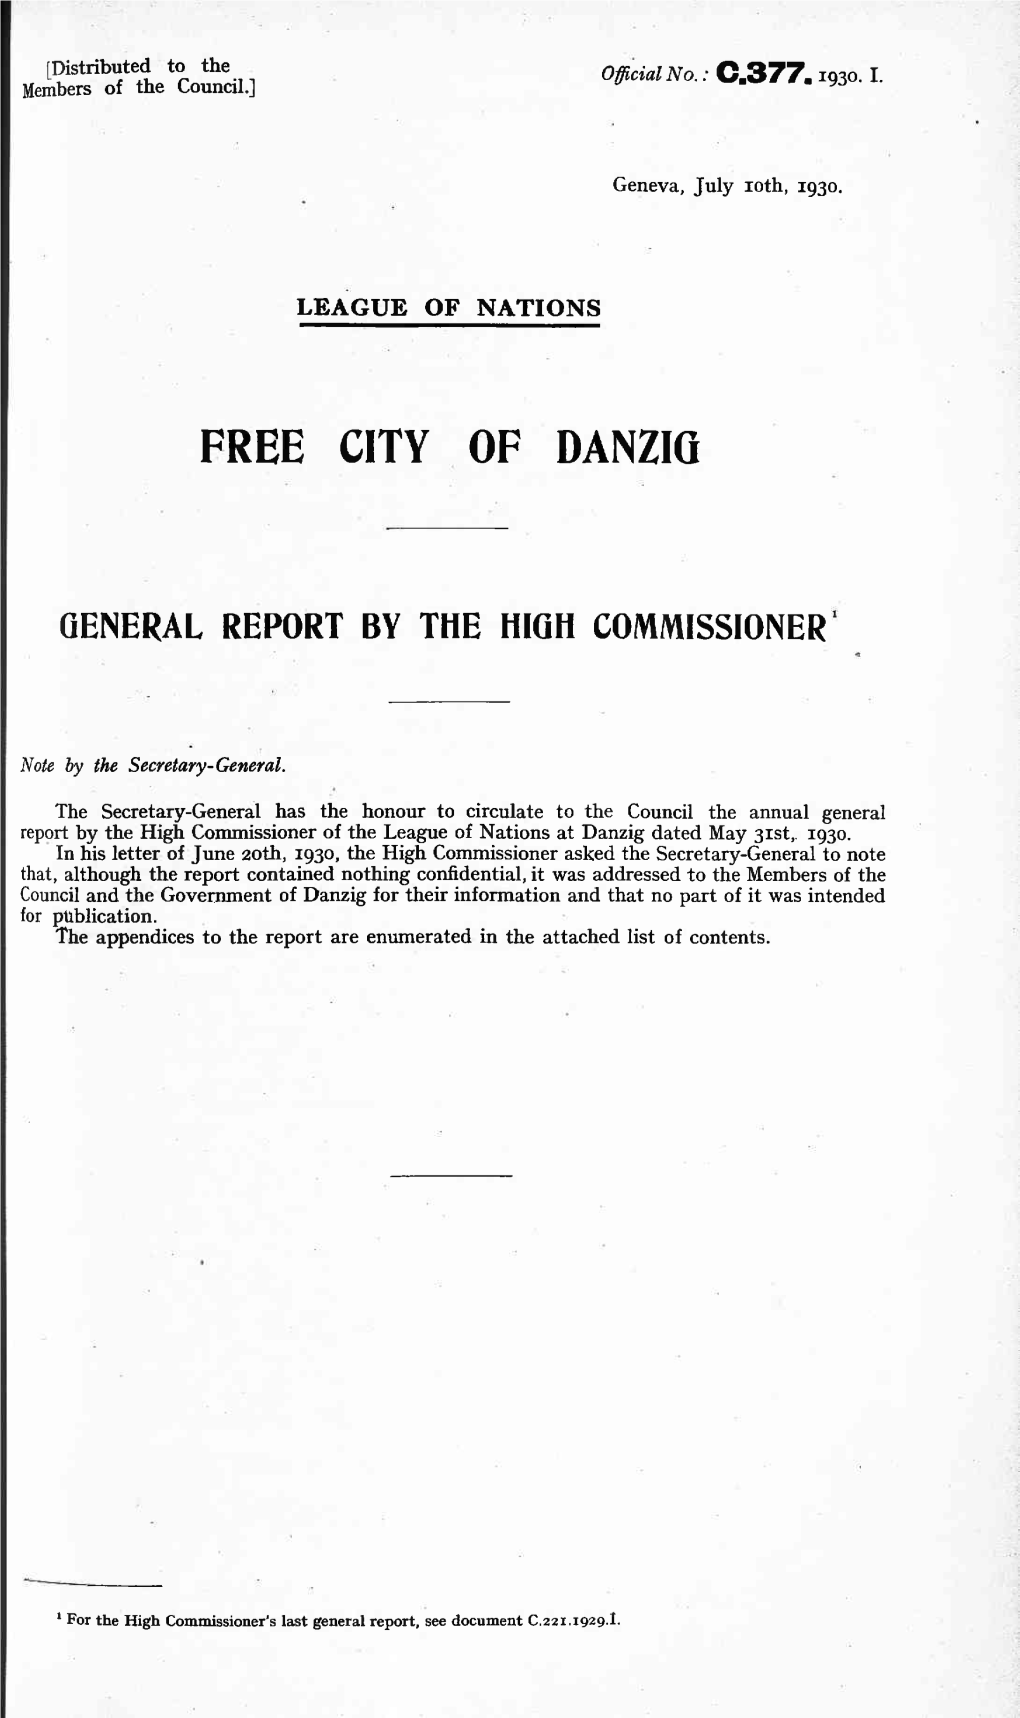 Free City of Danziq